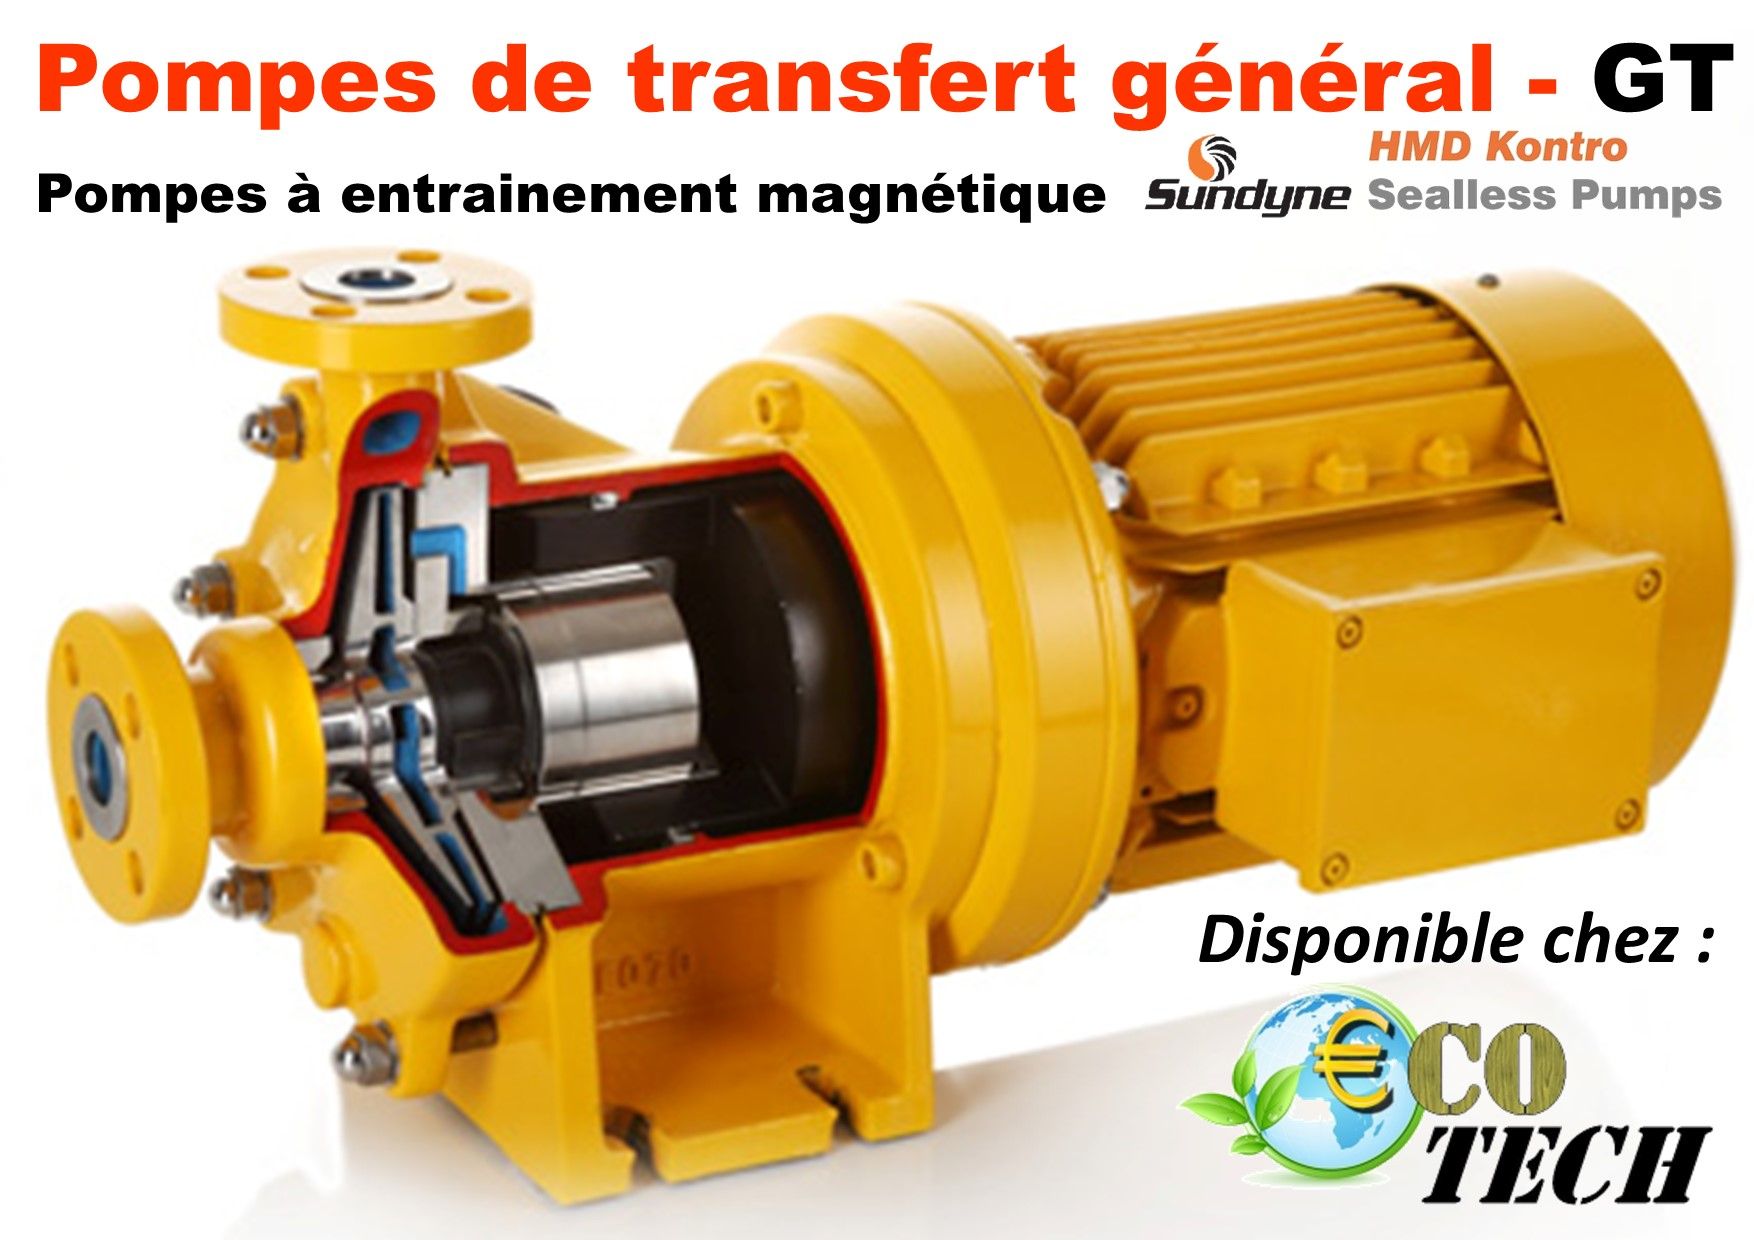 Pompe de transfert général - gt sundyne hmd kontro distributeur normandie_0